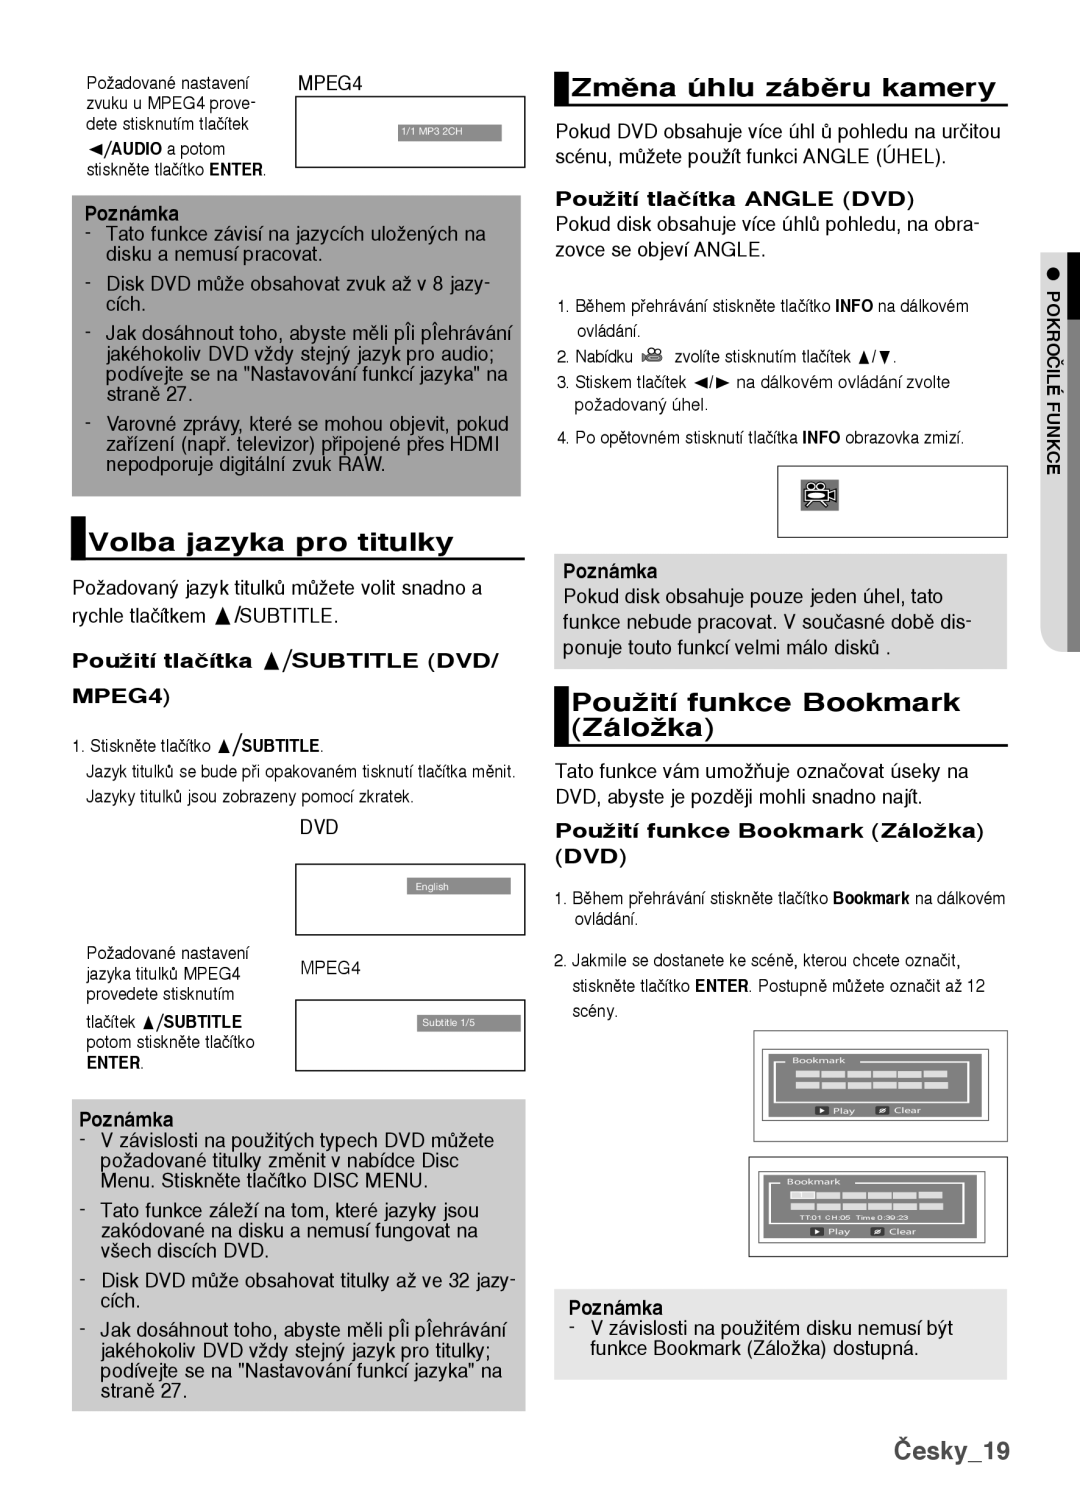 Samsung DVD-H1080/EDC manual Zmûna úhlu zábûru kamery, Volba jazyka pro titulky, PouÏití funkce Bookmark ZáloÏka, Česky19 